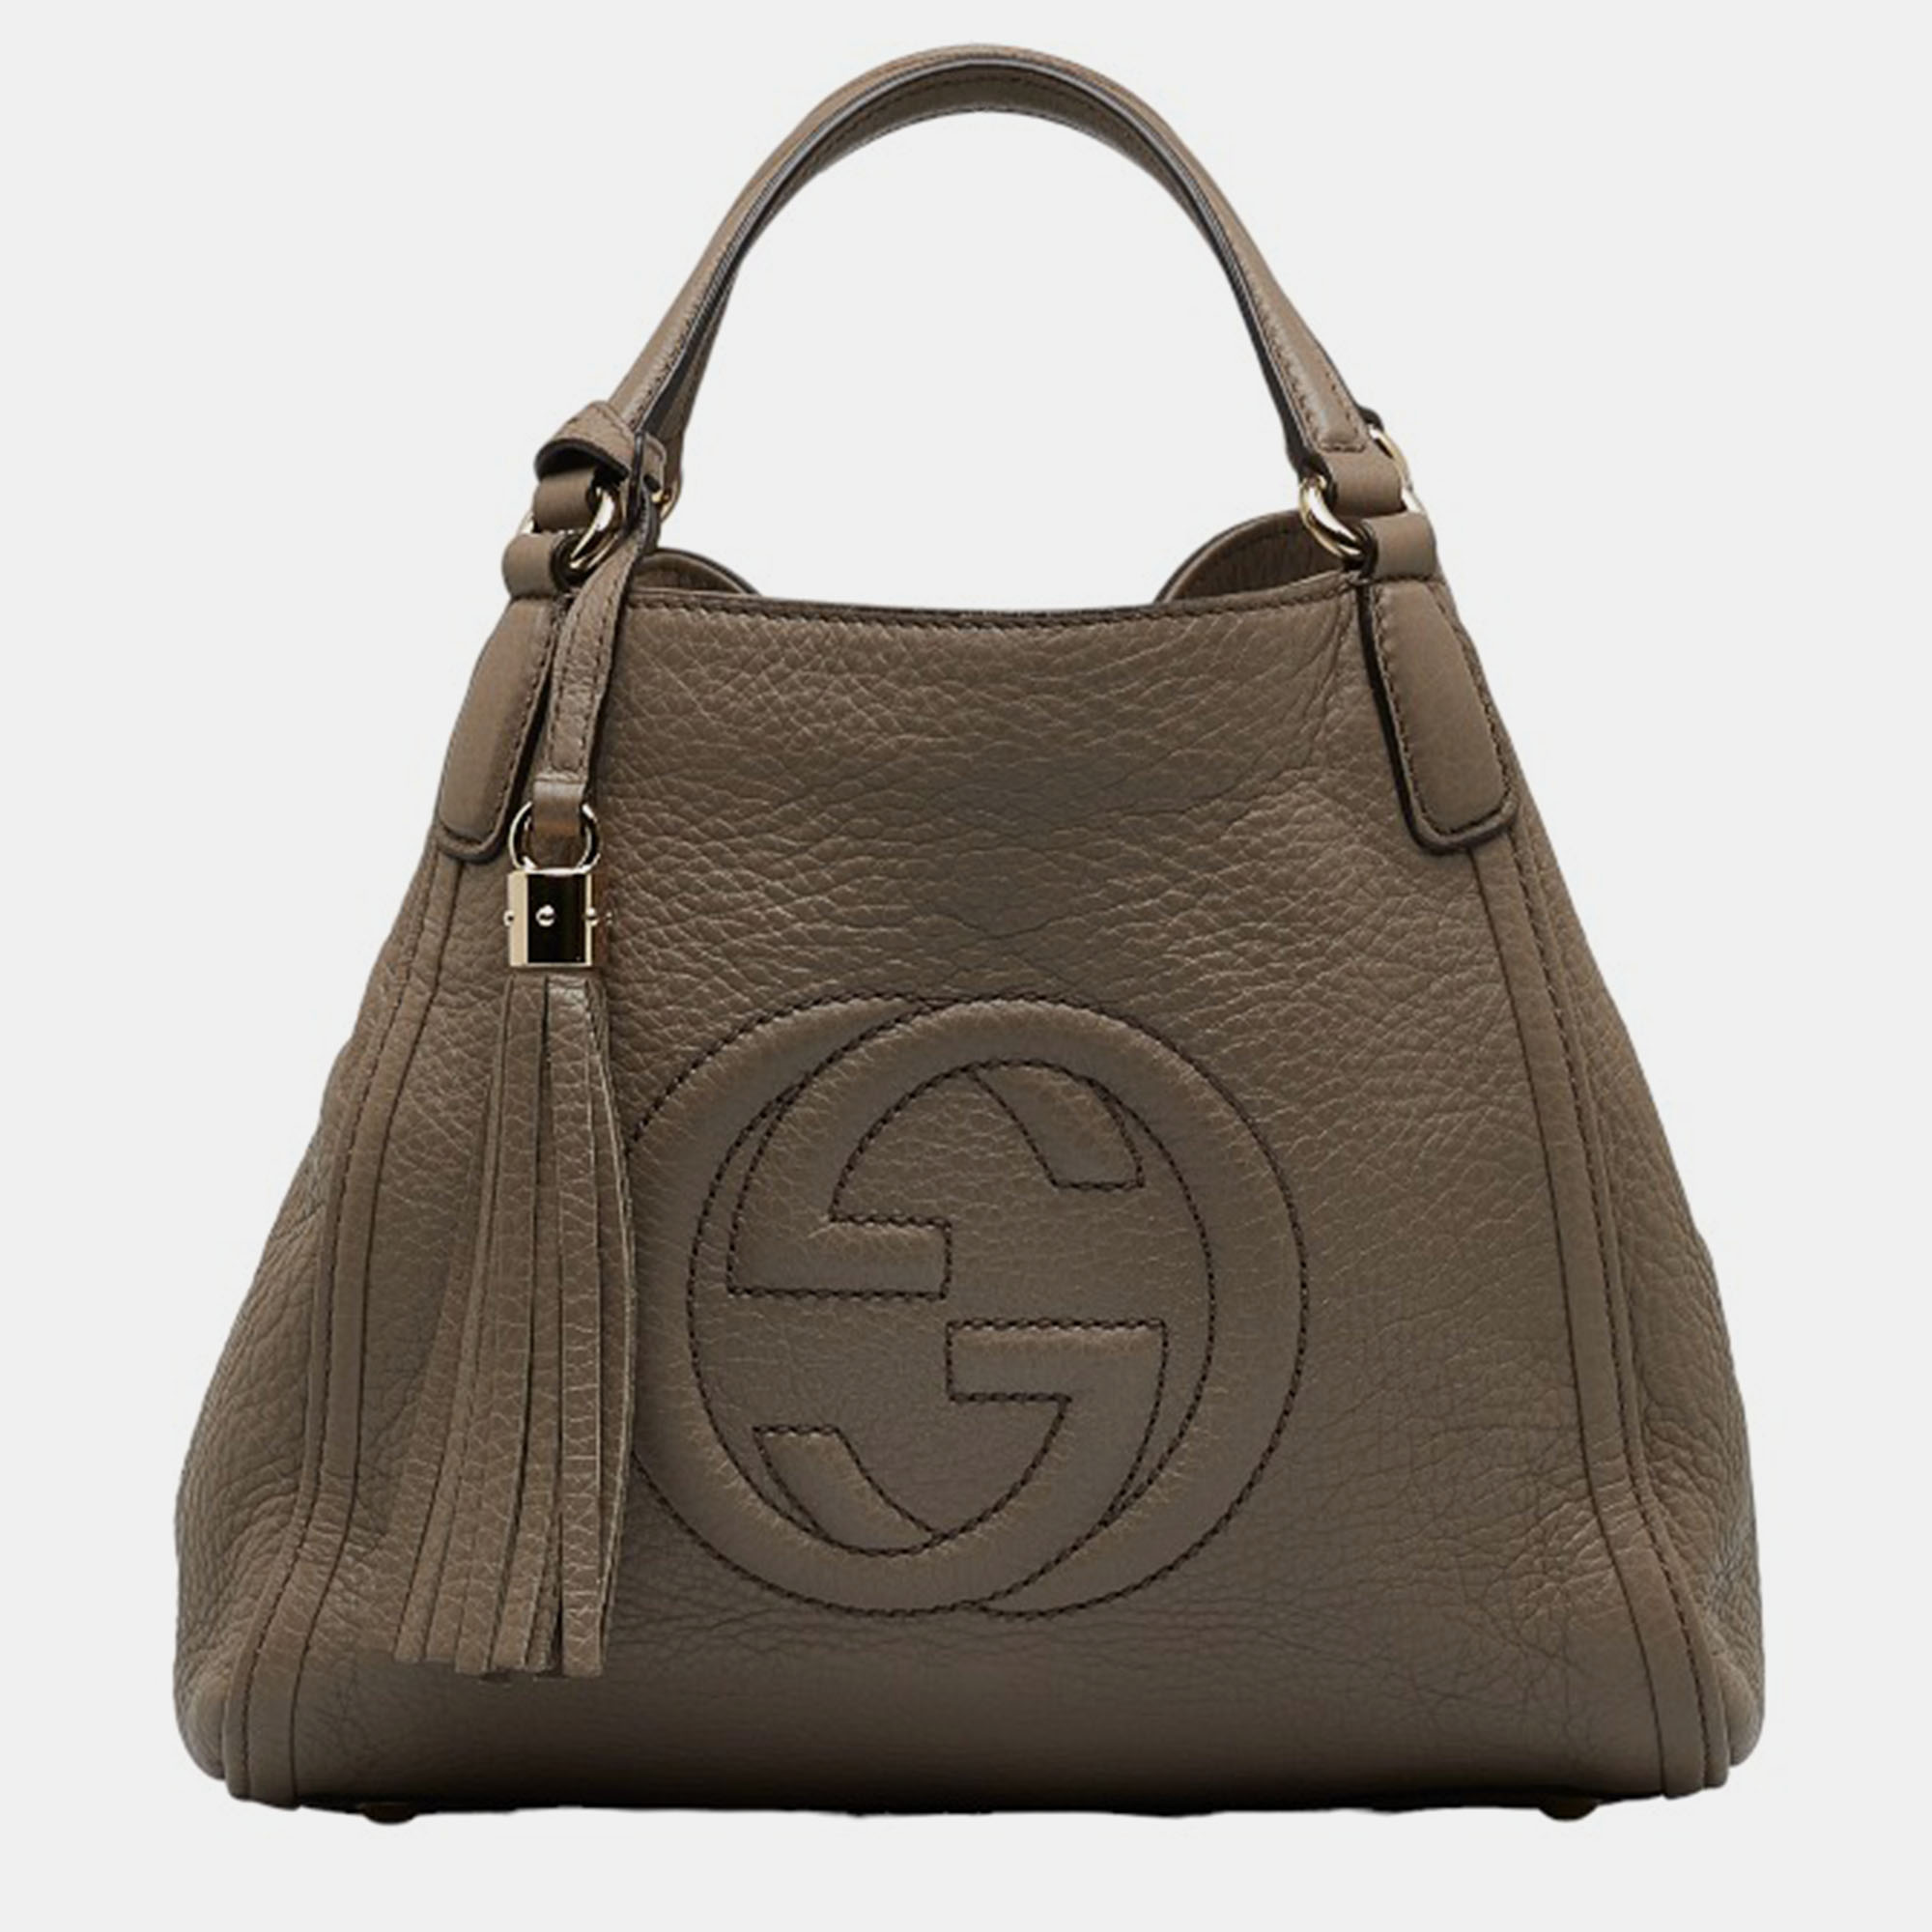 Gucci Brown Leather Soho Handbag